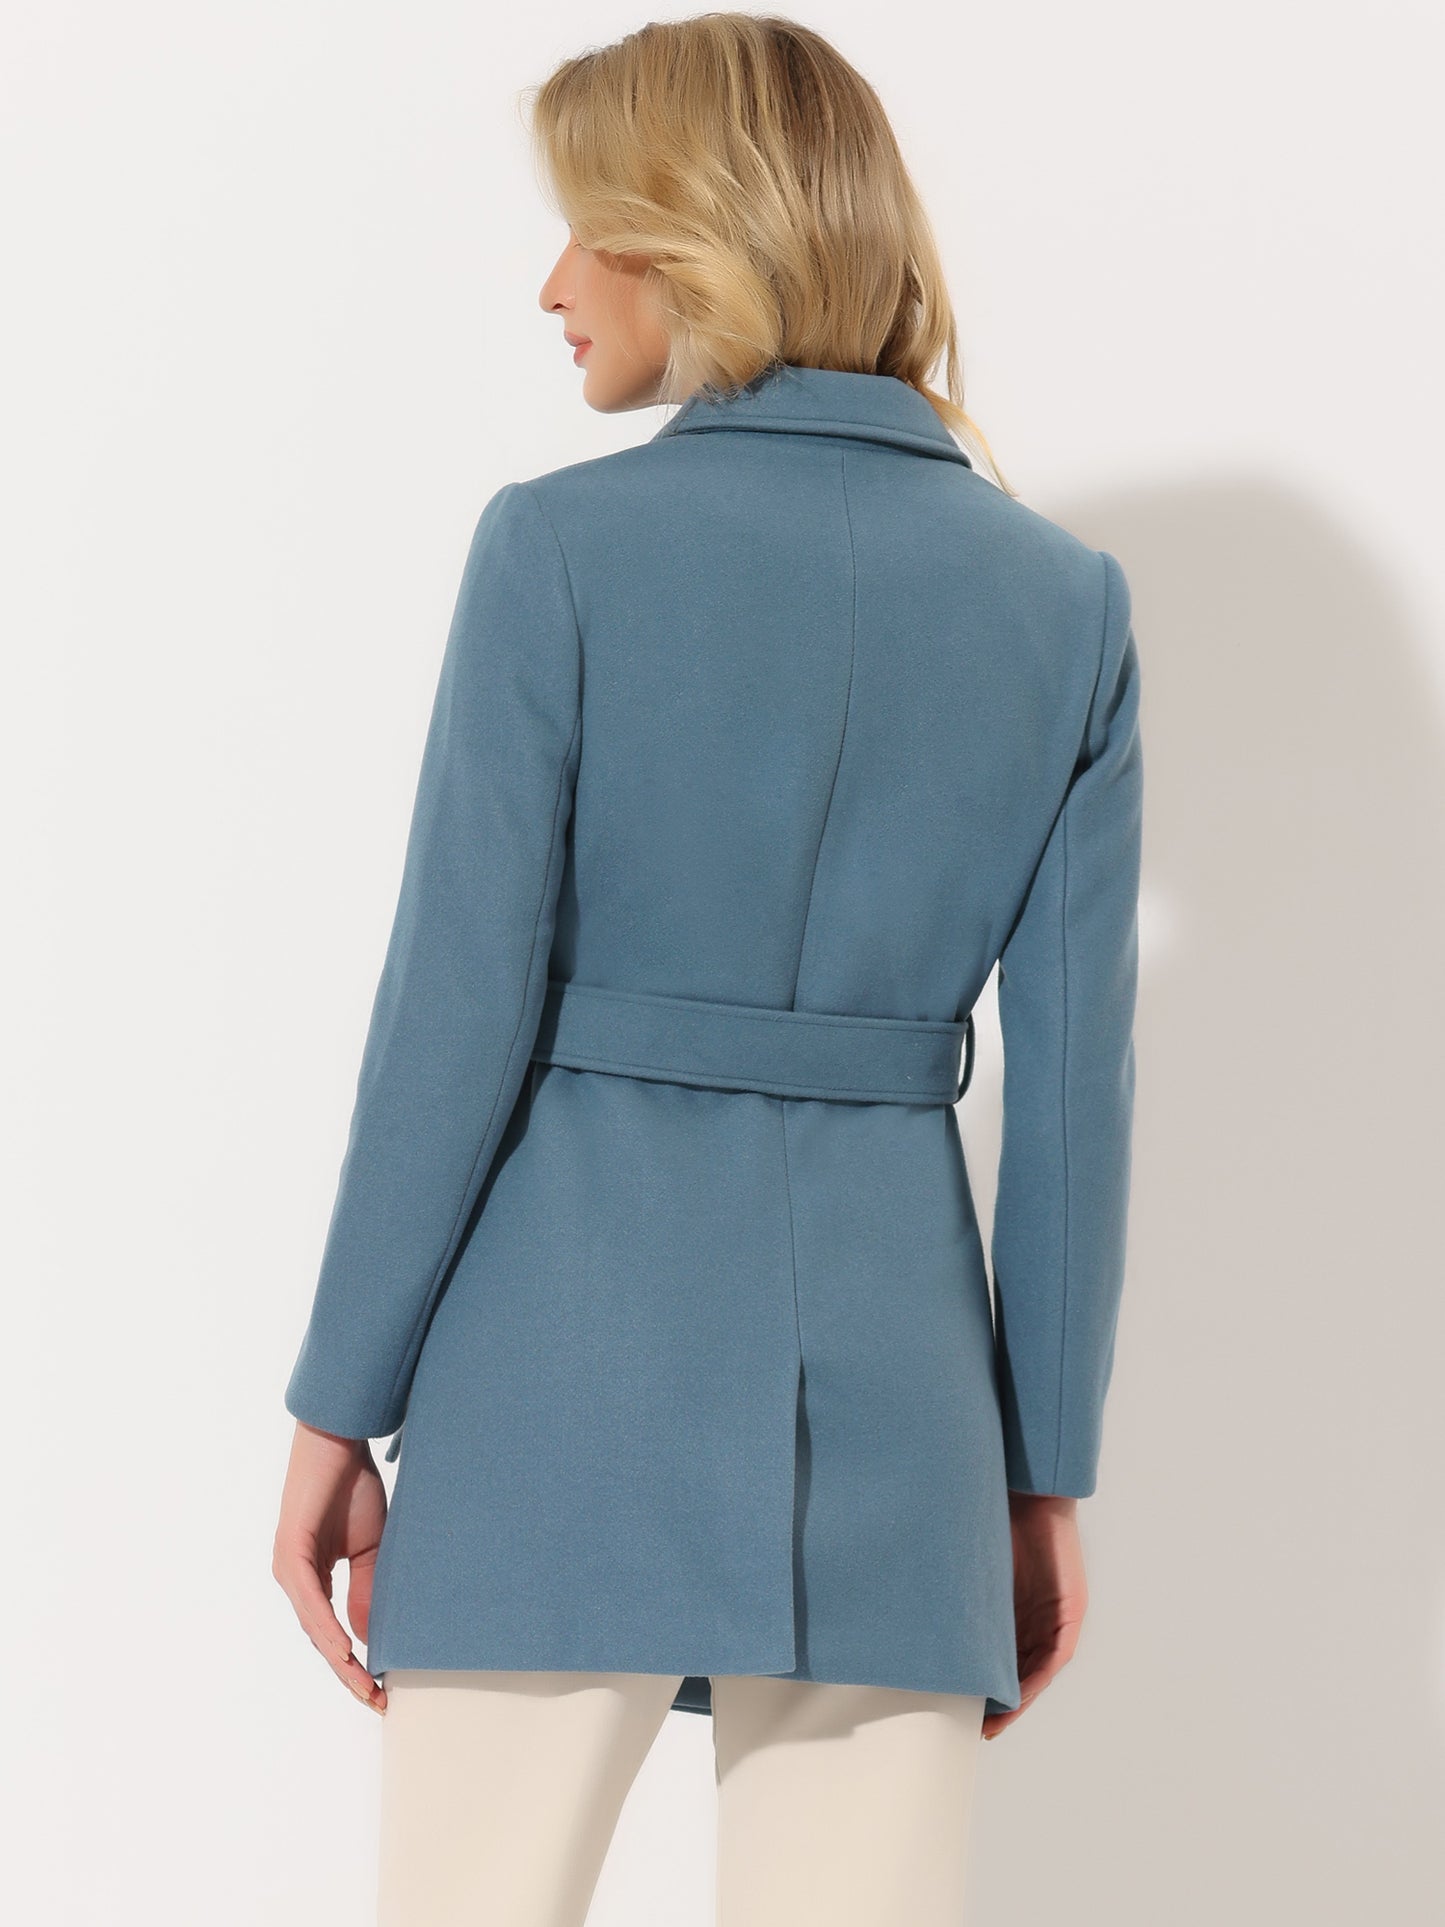 Allegra K Notch Lapel Double Breasted Belted Mid Long Outwear Winter Coat Grey Blue